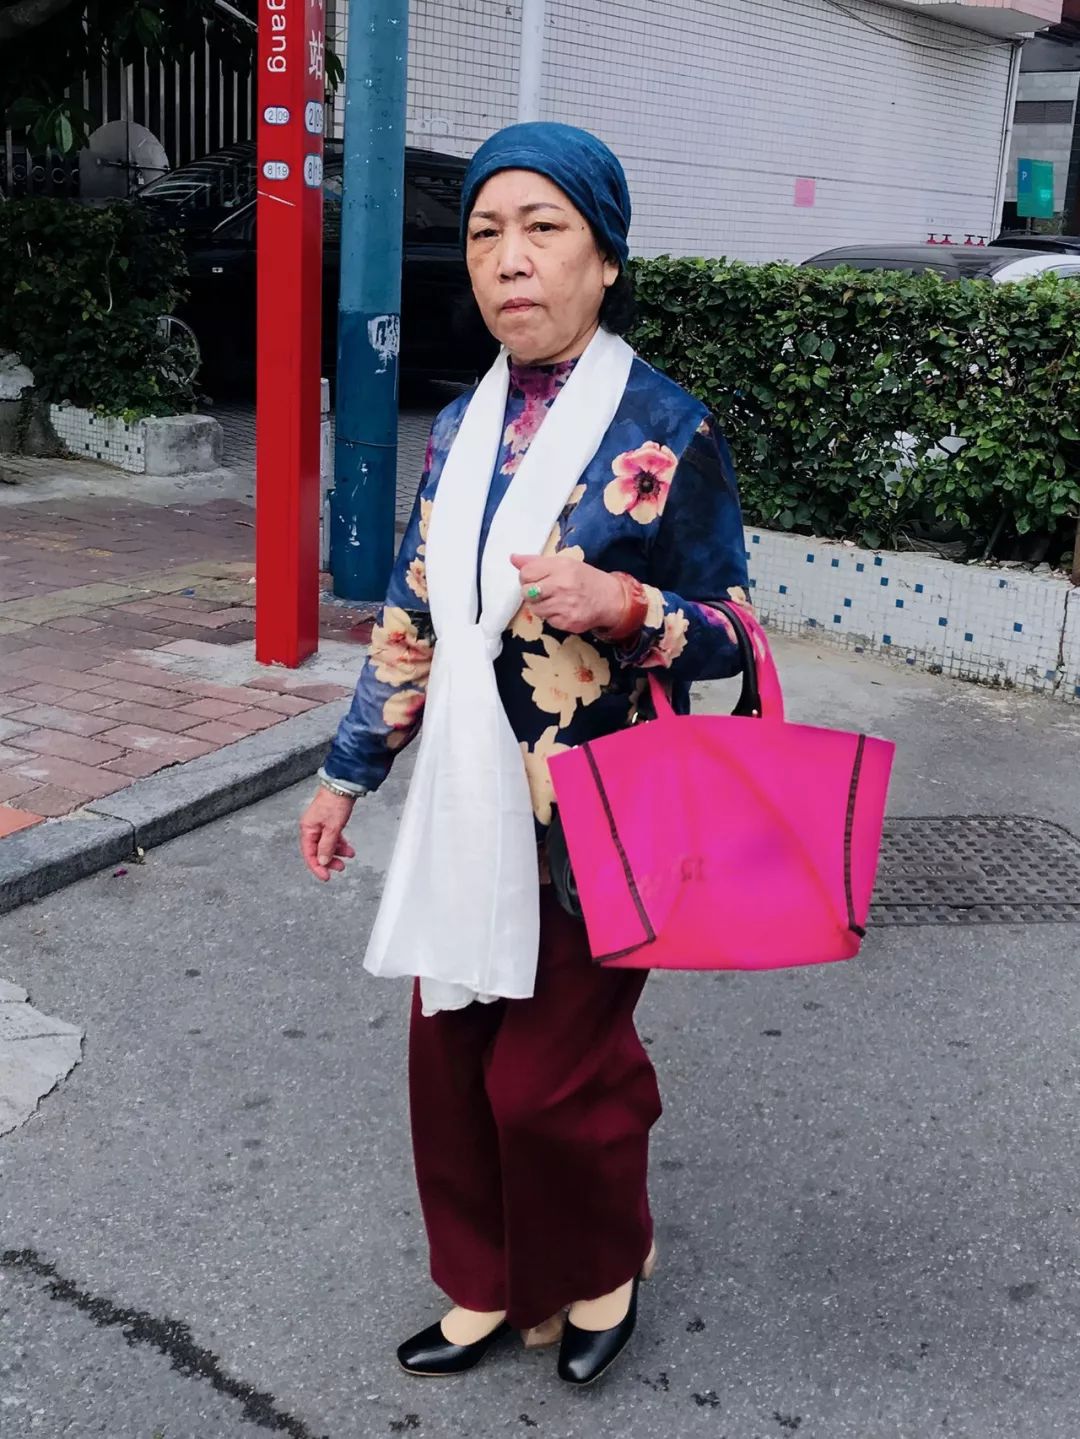 她在广州街拍3年，发现中国老头老太比年轻人潮多了